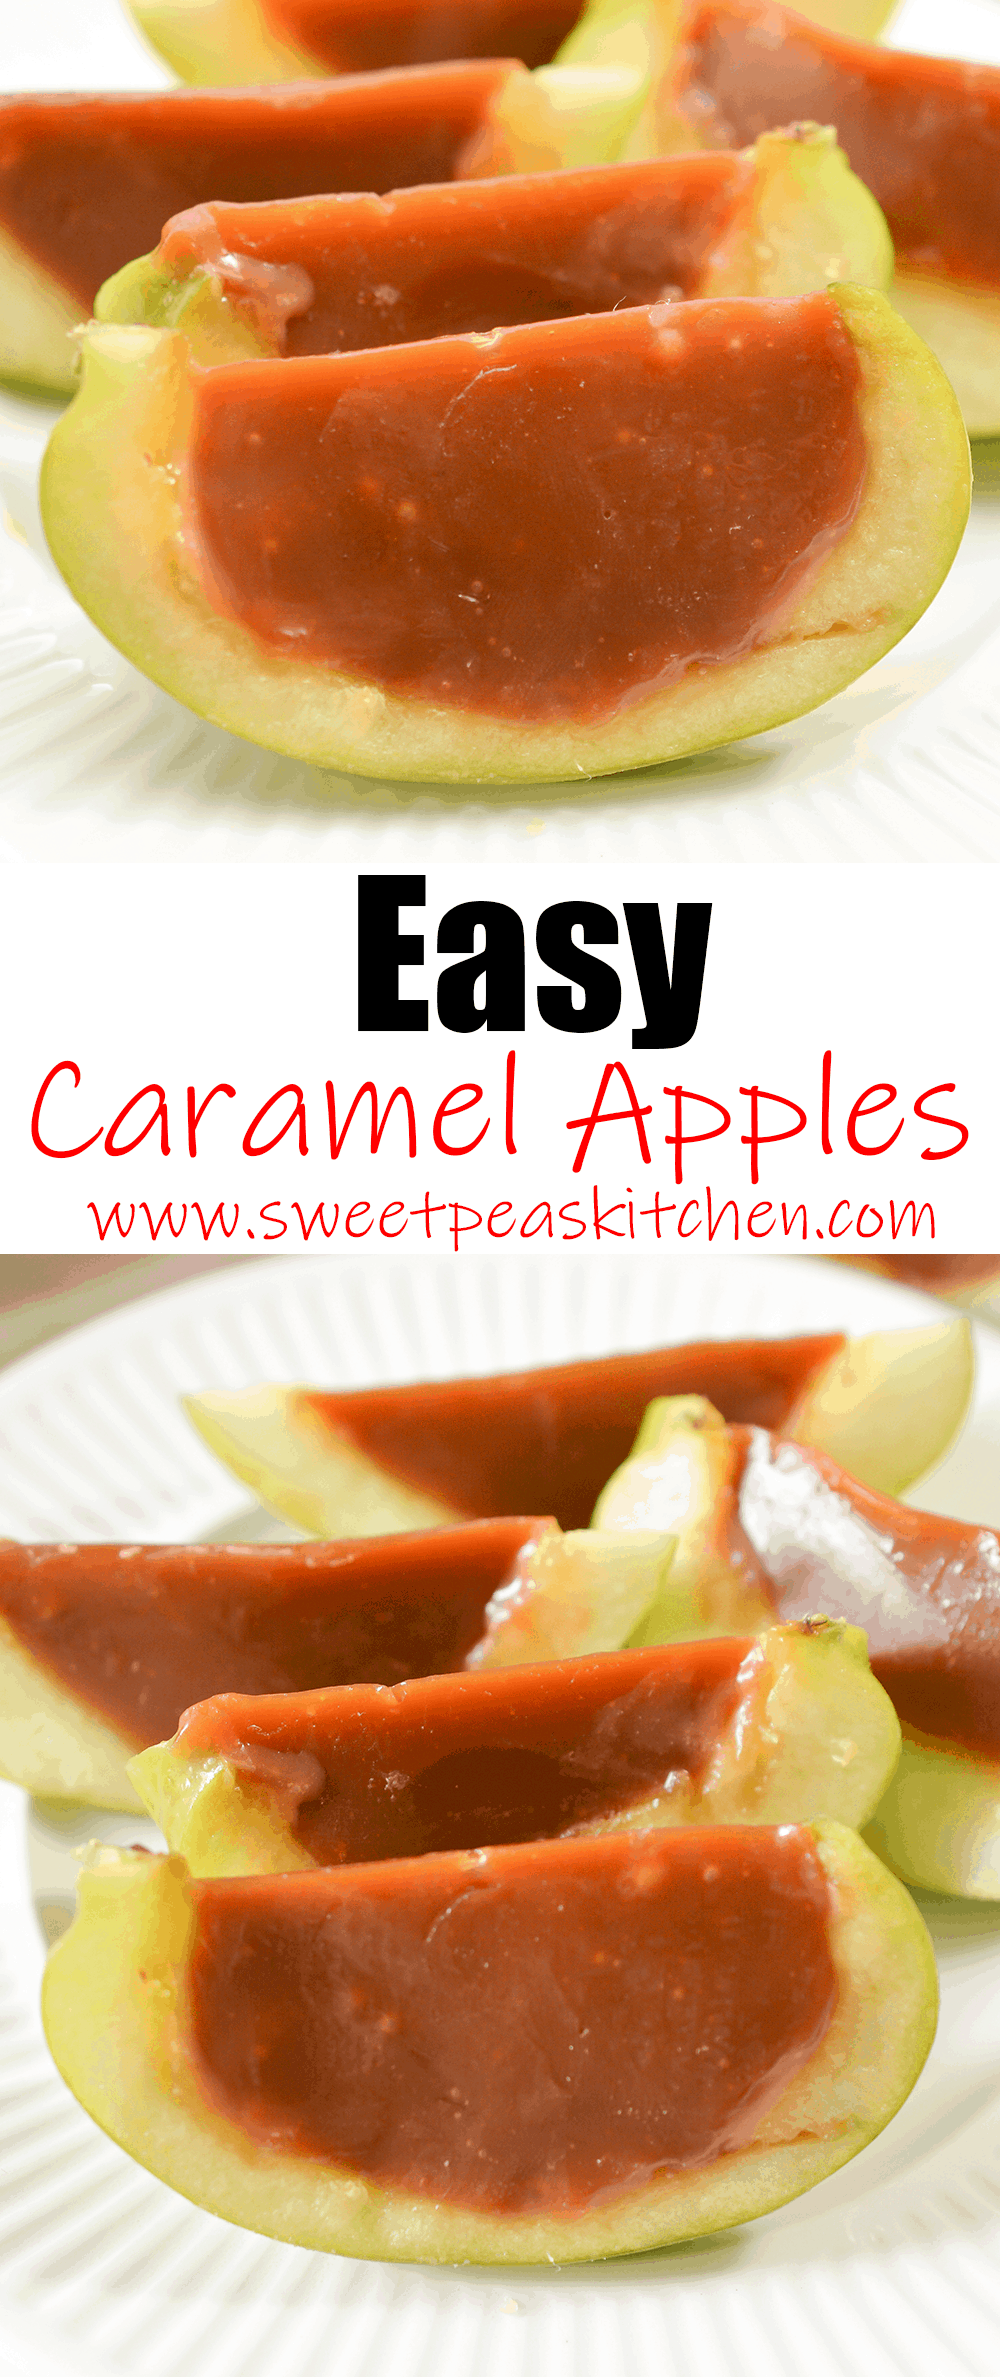 Easy Caramel Apples